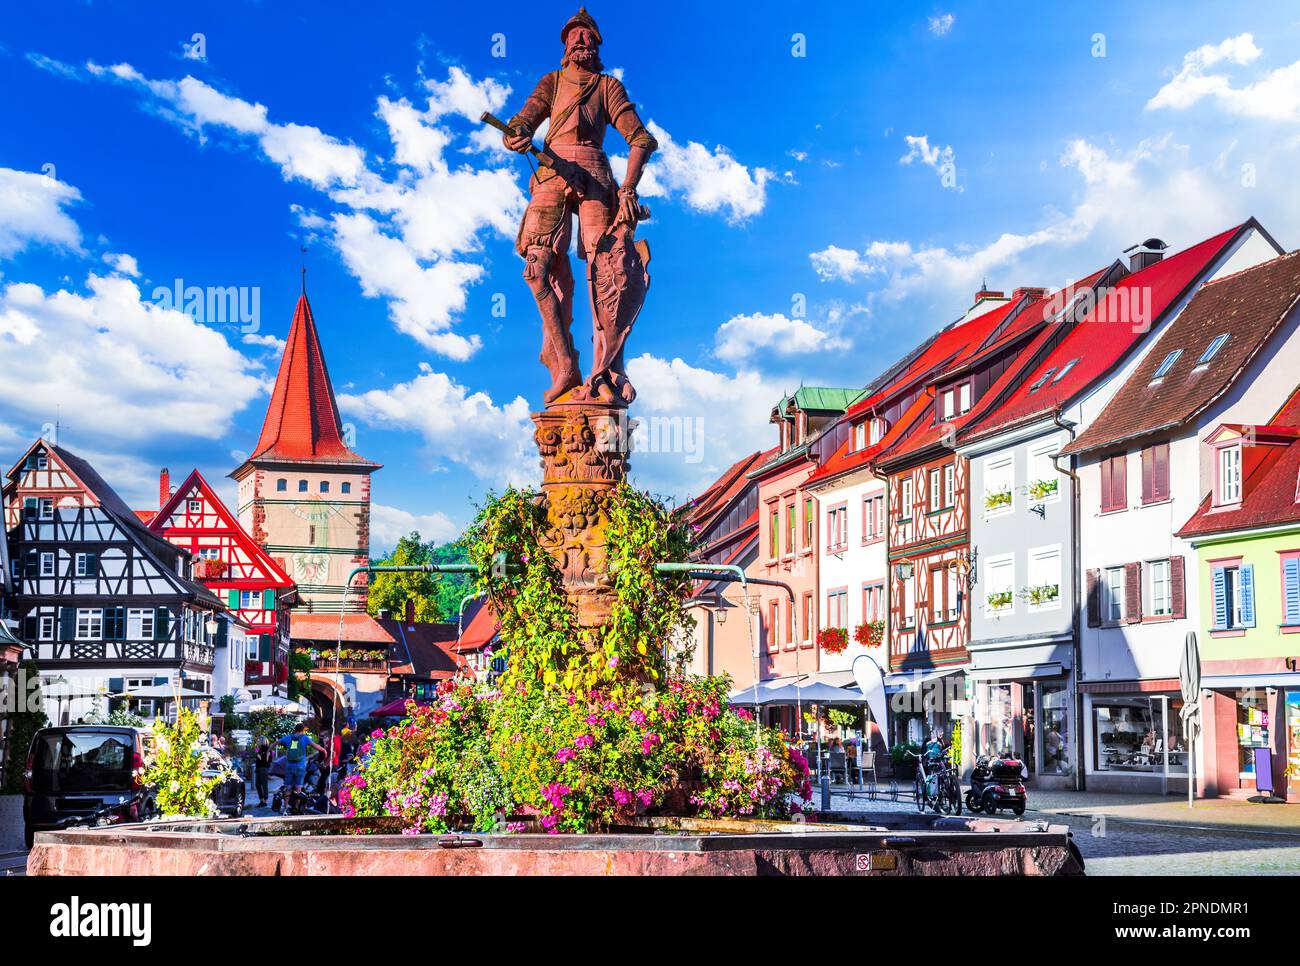 Gengenbach, Deutschland. Der 1587 erbaute Rohrbrunnen-Brunnen, charmante Gebäude mit Holzrahmen und farbenfrohe Blumenarrangements. Schwarzwaldreisen in Bad Stockfoto